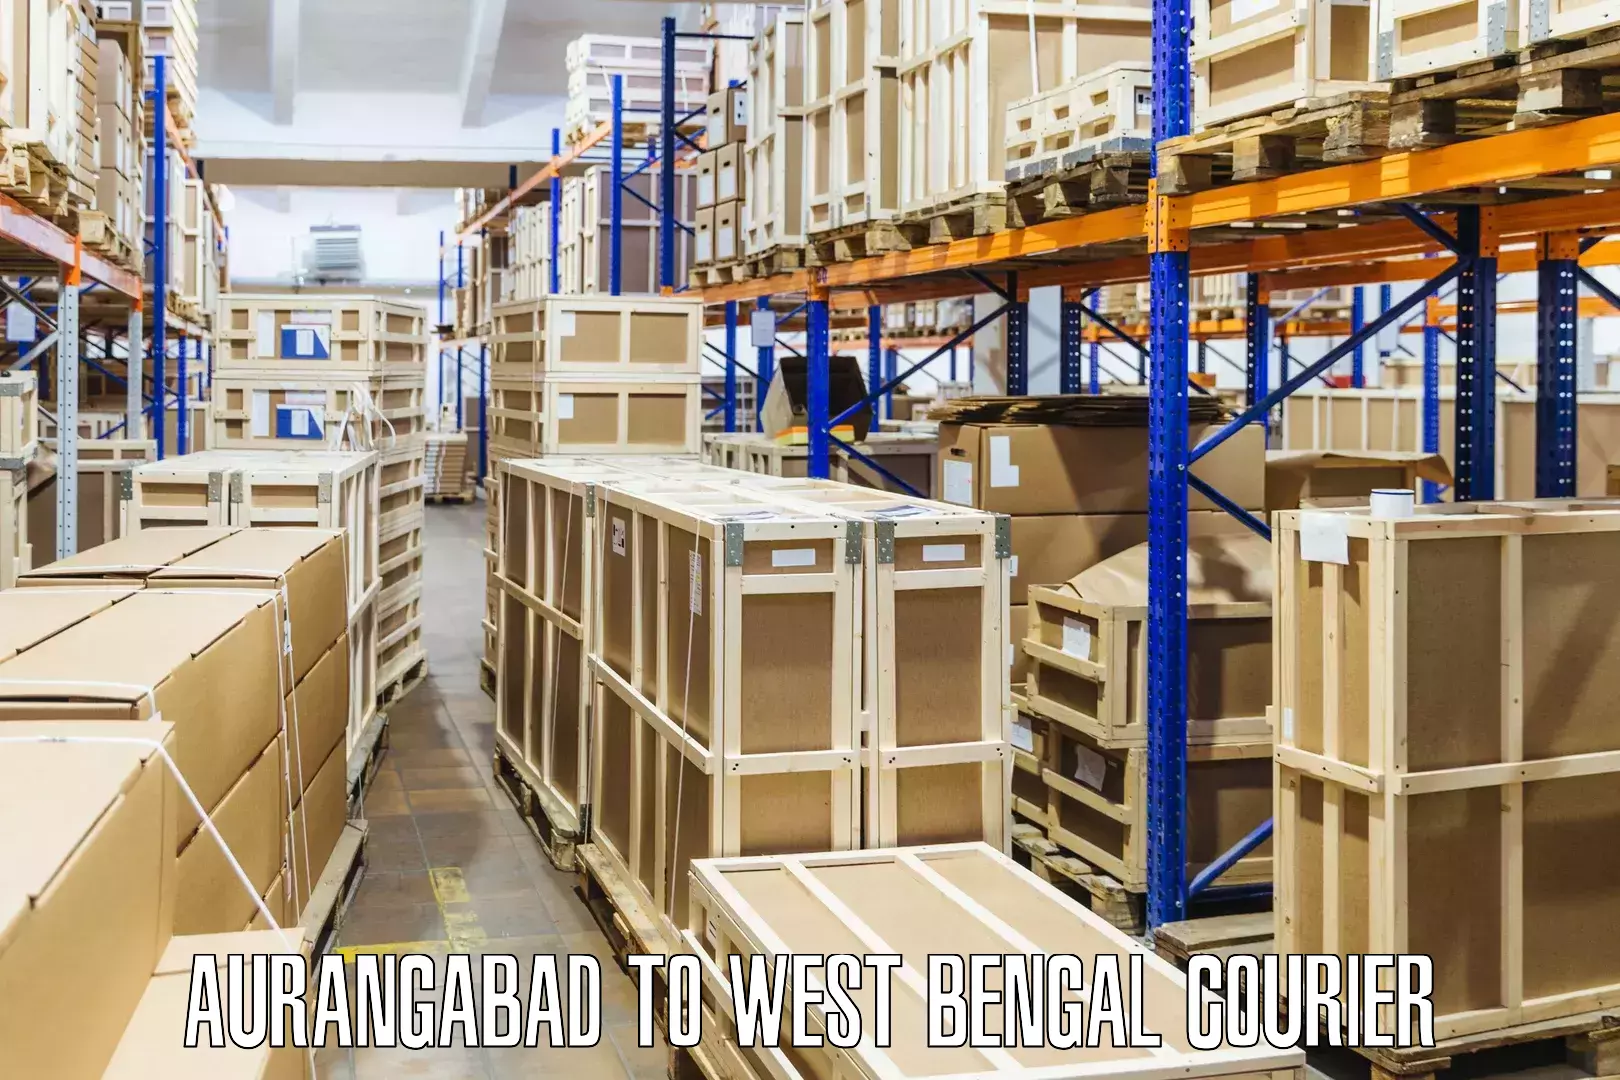 Efficient parcel transport Aurangabad to Belda